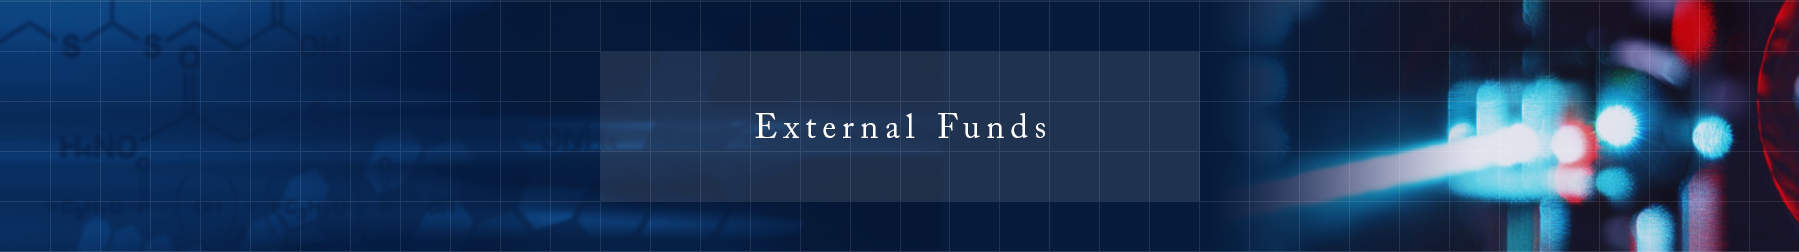 External Funds